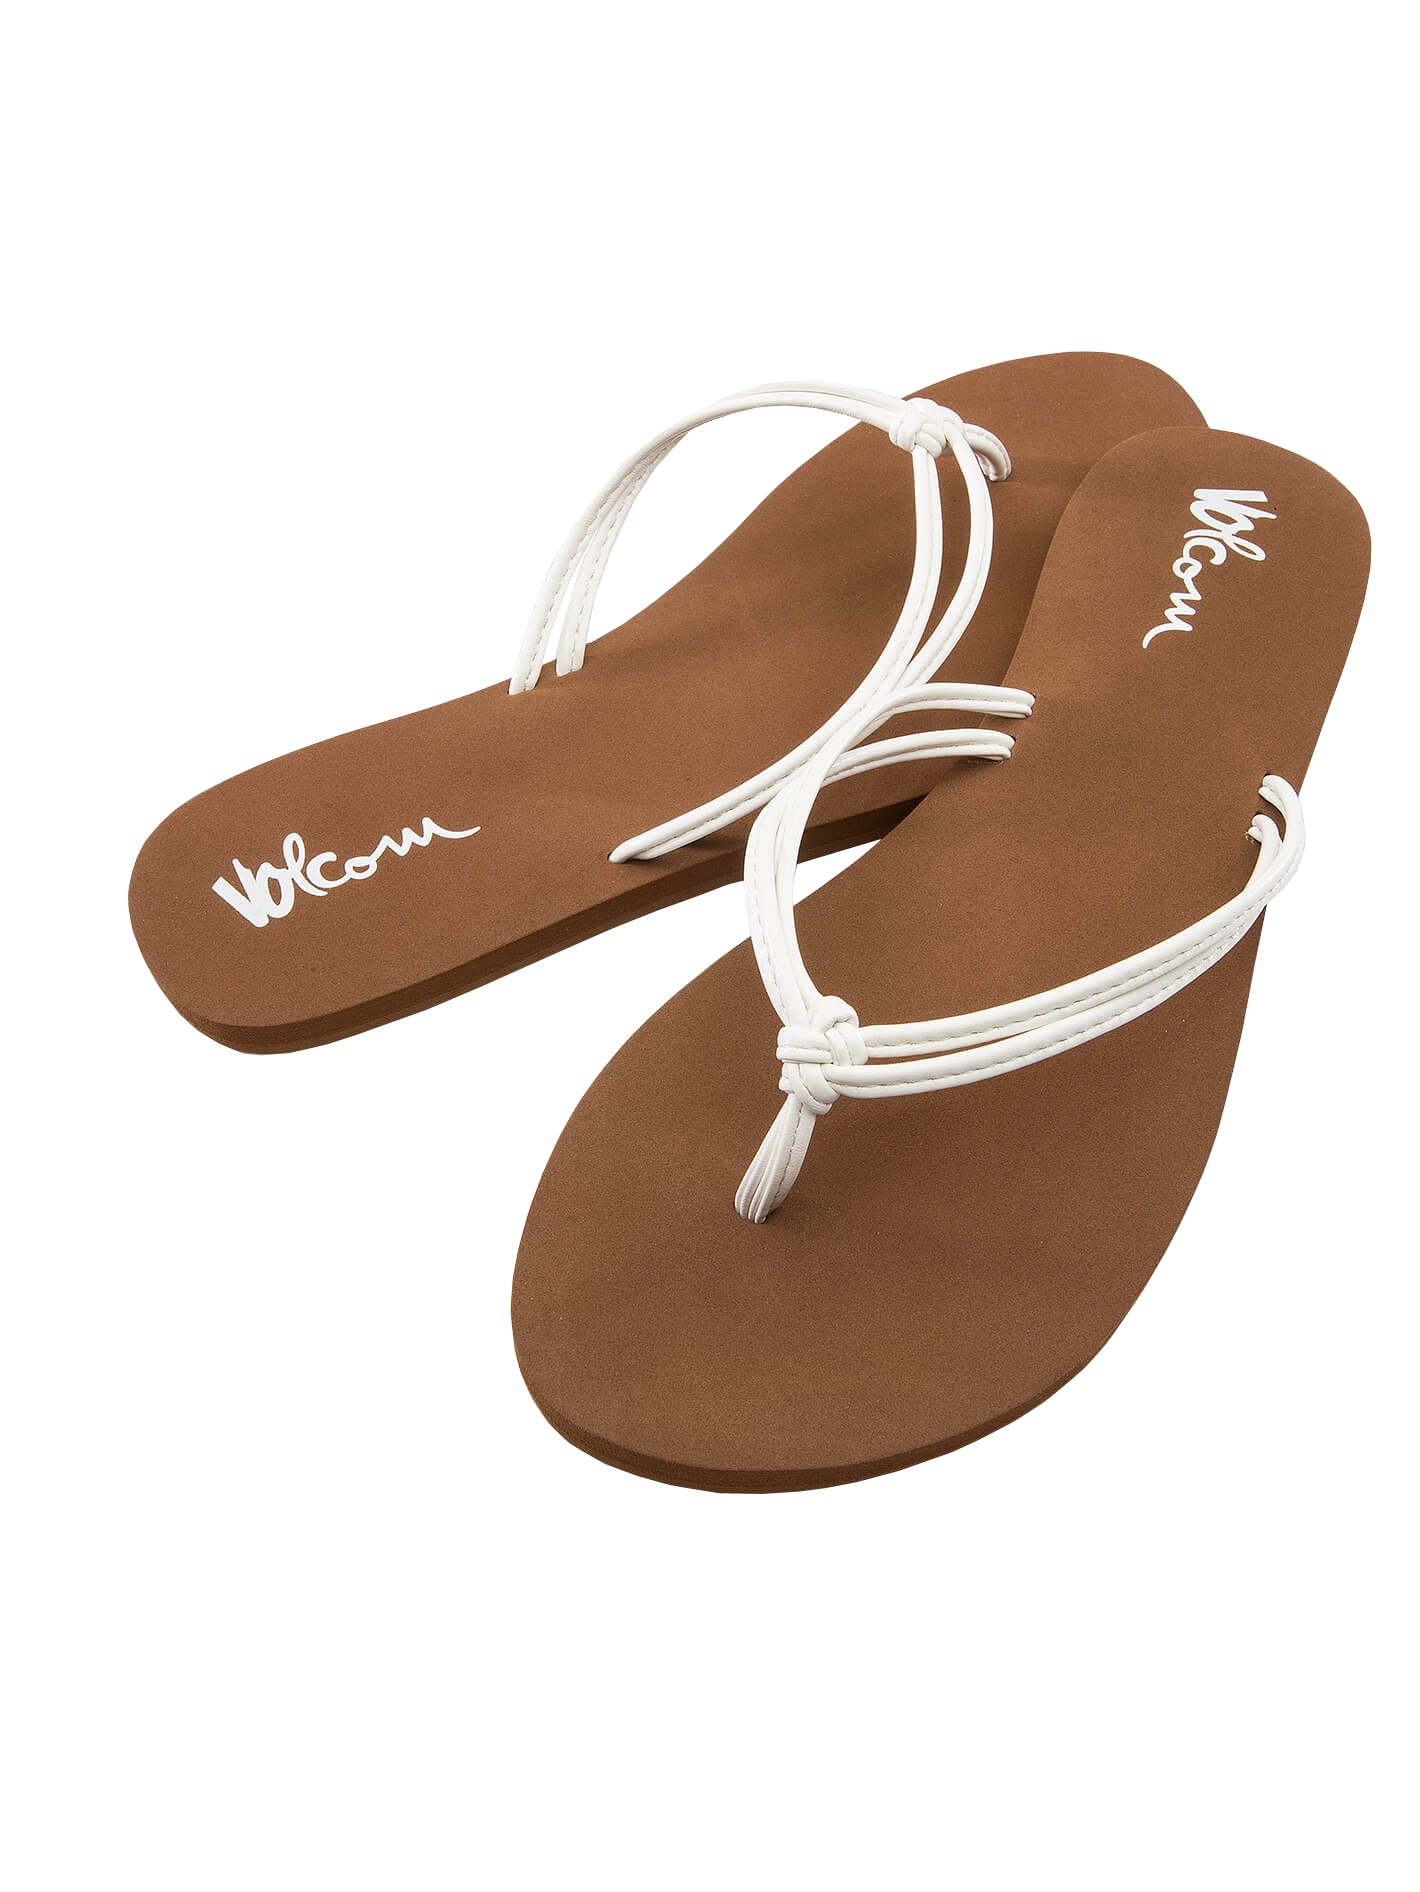 Volcom Forever and Ever 2 Womens Sandal WHT-White 5